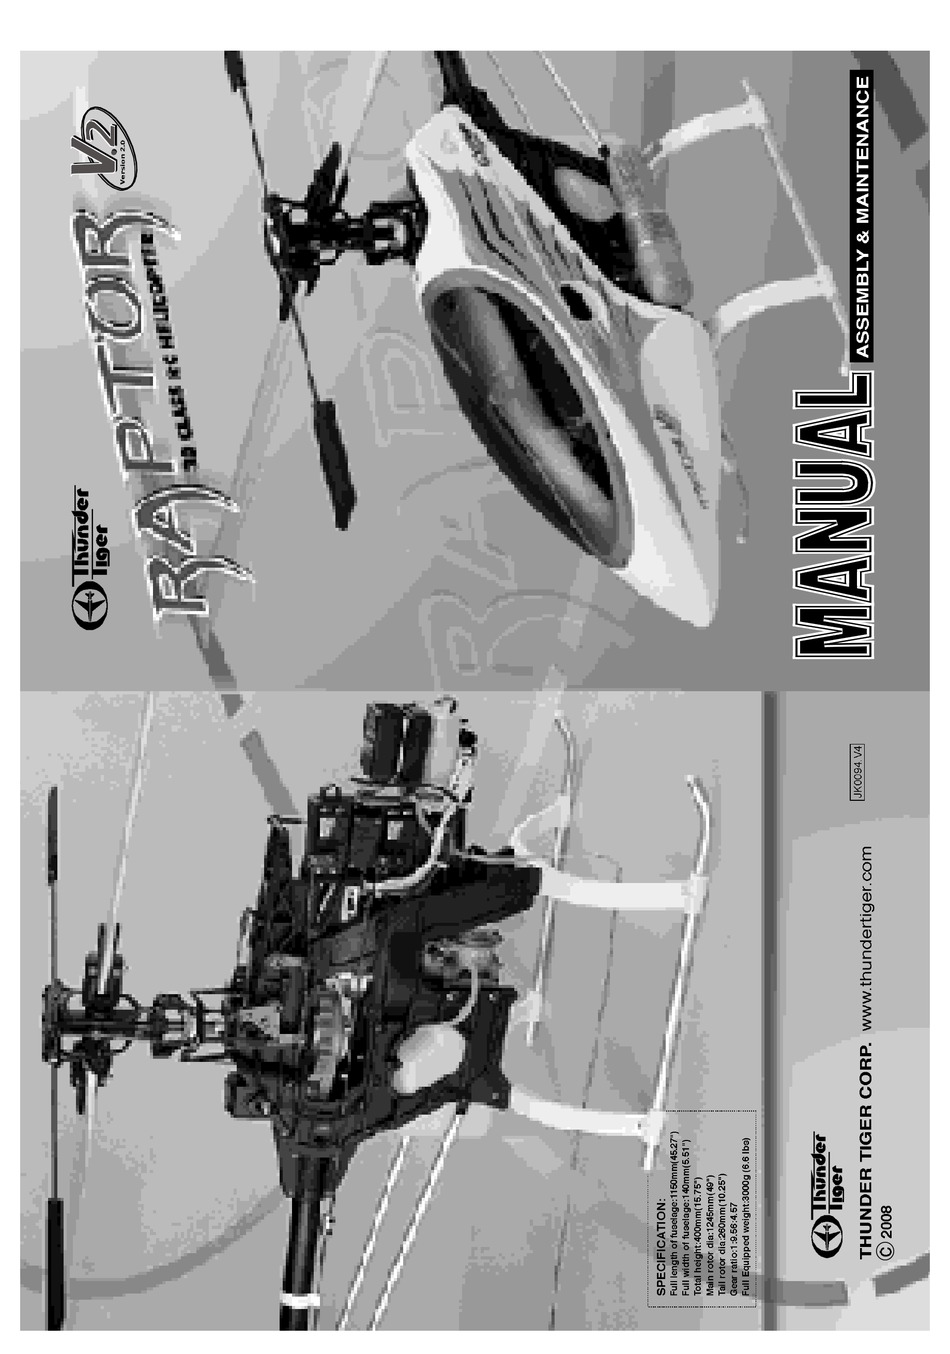 Tg 8000 gyro manual pdf manual